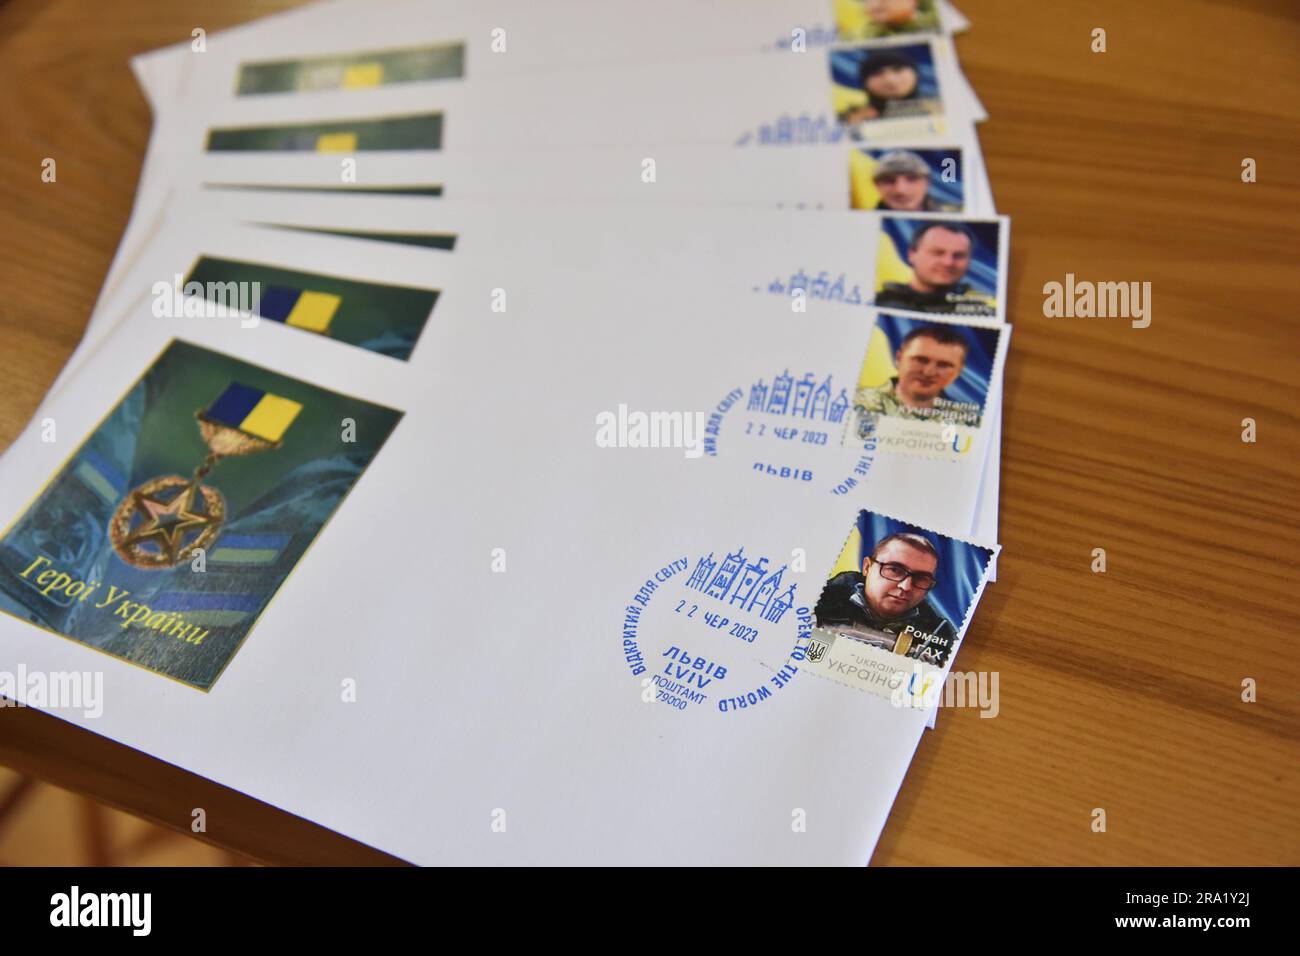 Timbres avec l'image des gardes-frontières ukrainiens tués par l'armée russe, qui ont reçu à titre posthume le titre de héros de l'Ukraine, collés sur des enveloppes. En l'honneur des gardes-frontières ukrainiens tués, l'armée russe a émis des timbres. Cela s'est produit à l'initiative de l'organisation publique "Communauté en action" et "Ukrposhta". Les timbres ont été dédiés à huit héros d'Ukraine, les gardes-frontières ont reçu ce titre à titre posthume. Les timbres ont été rachetés en présence de deux familles de héros tombés d'Ukraine - Roman Gakh et Ihor Dashko. L'argent de la vente de ces timbres sera b Banque D'Images